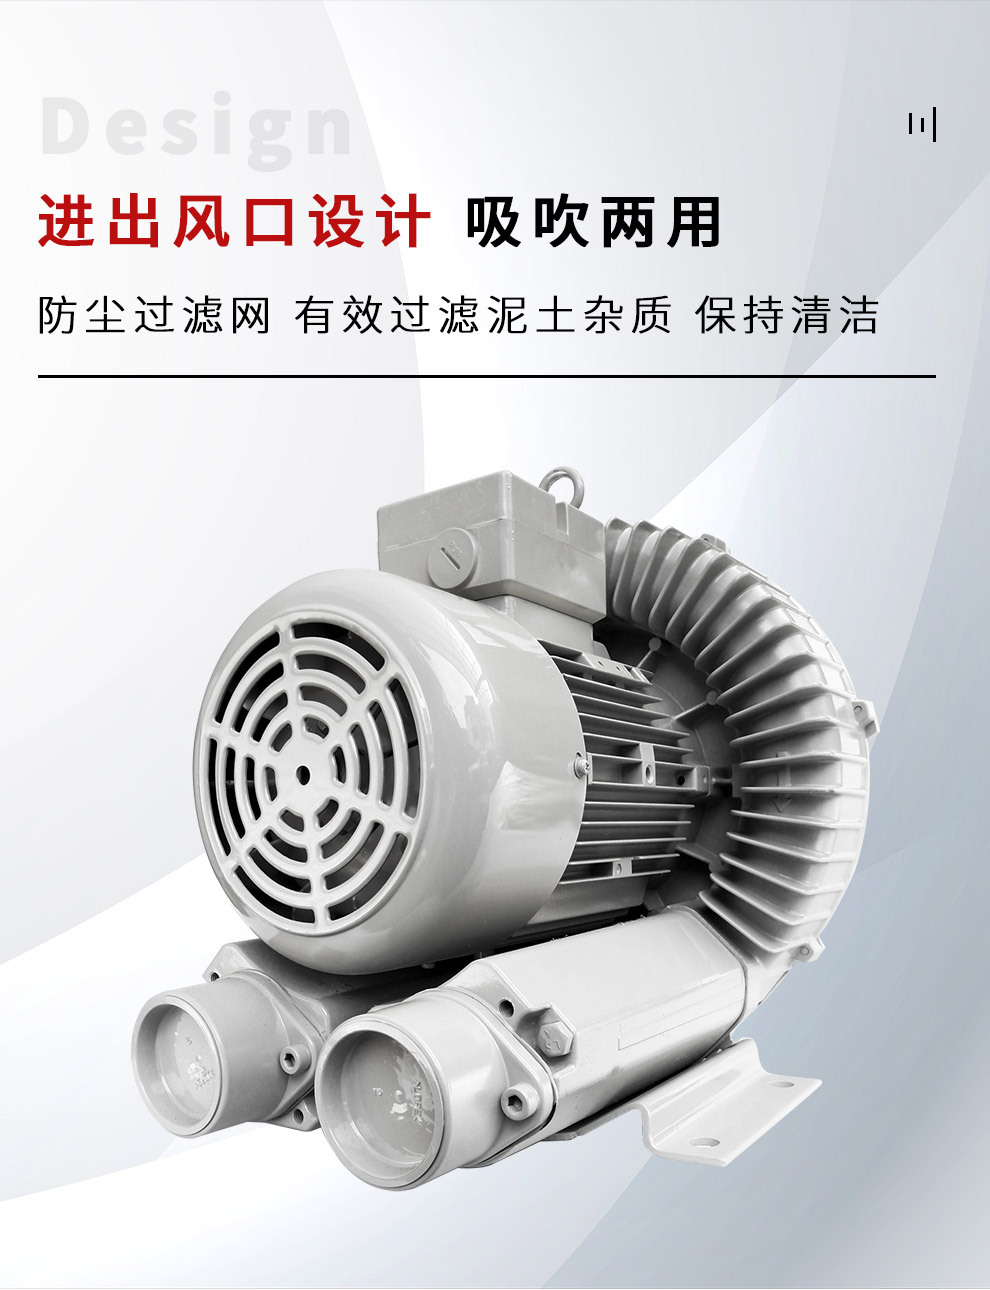 工业高压鼓风机RB40-620 水中供养真空吸附机 耐磨风机 HOHSING台湾贺欣示例图6